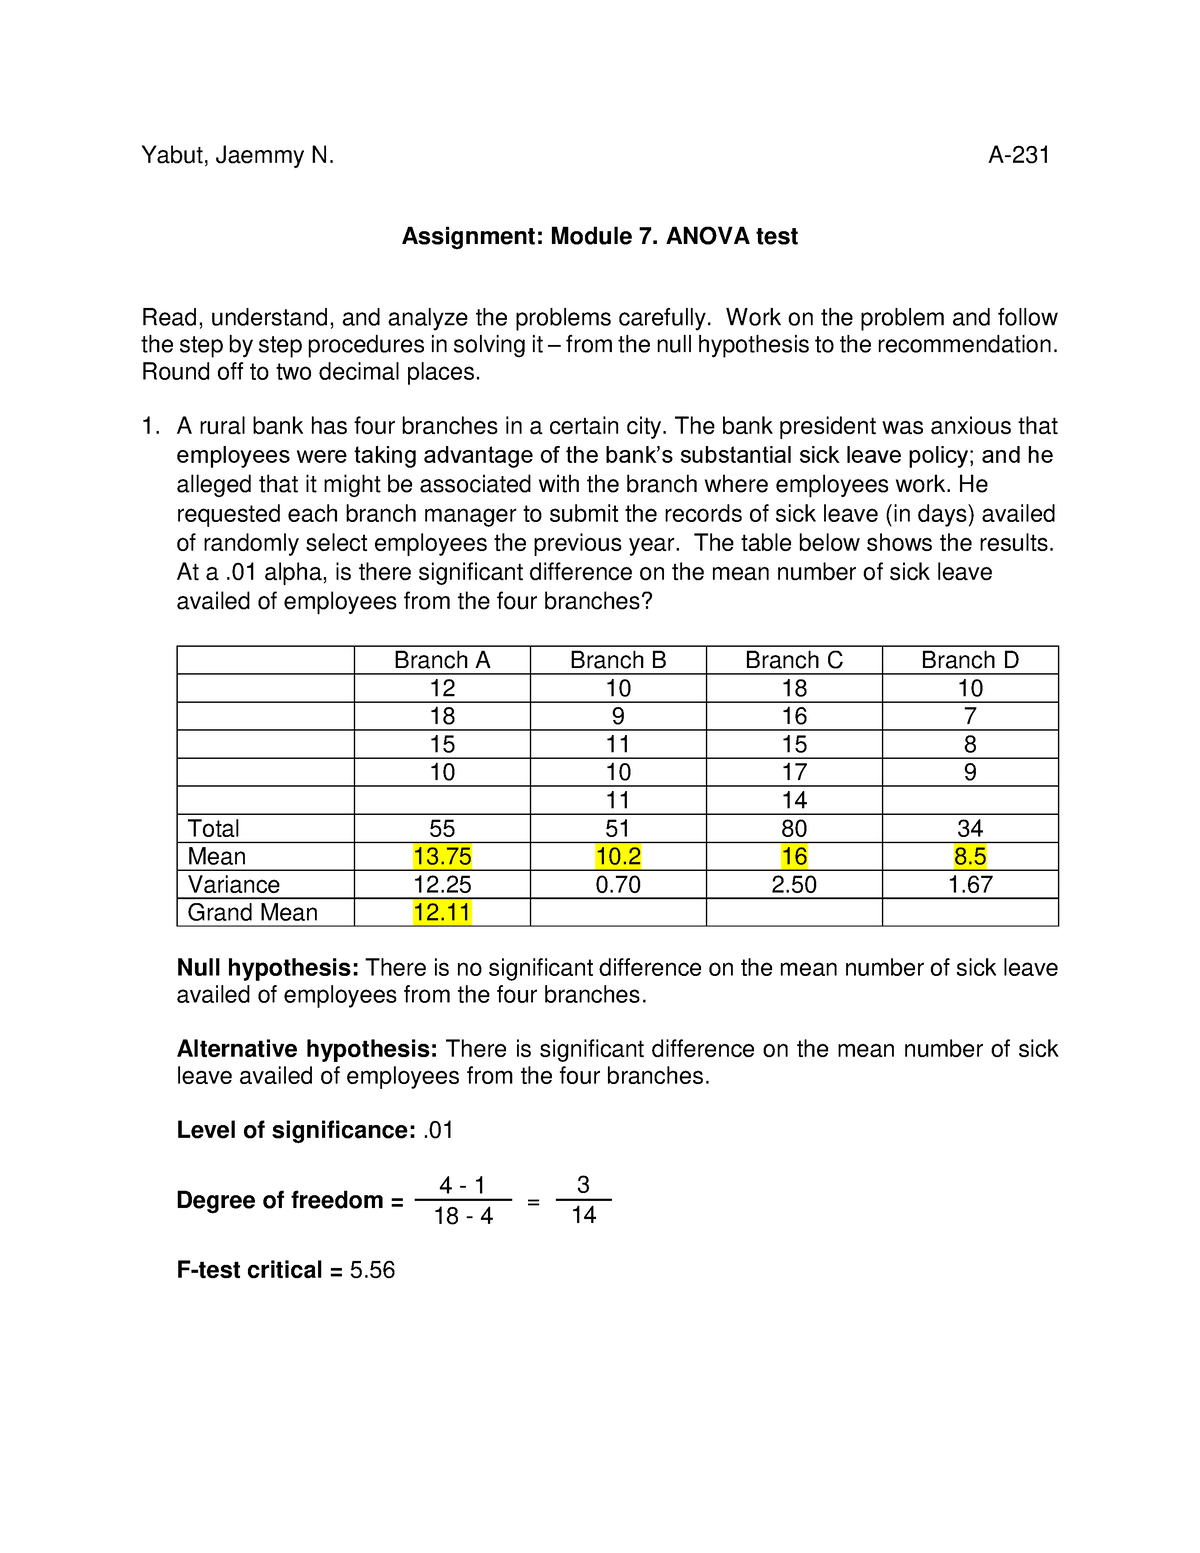 assignment module 7. anova test